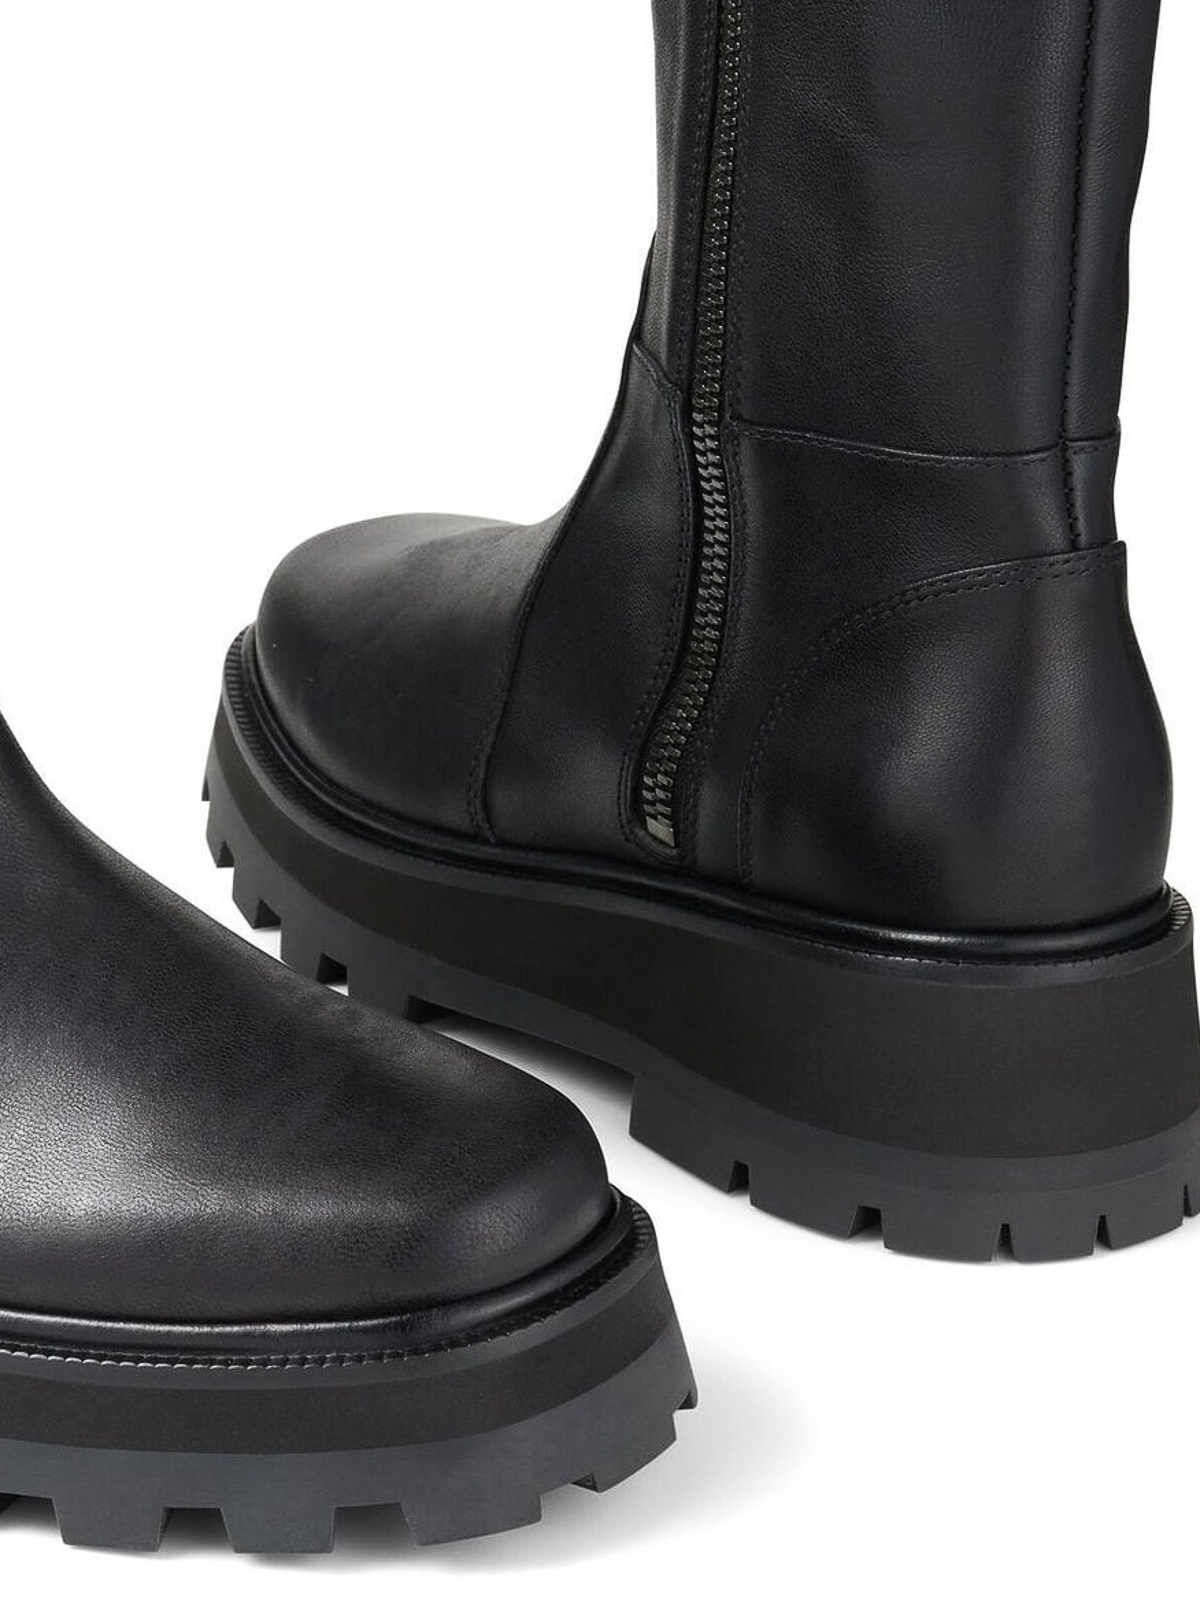 Boots Jimmy Choo - Bayu Flat leather boots - BAYUFLATRESBLACK